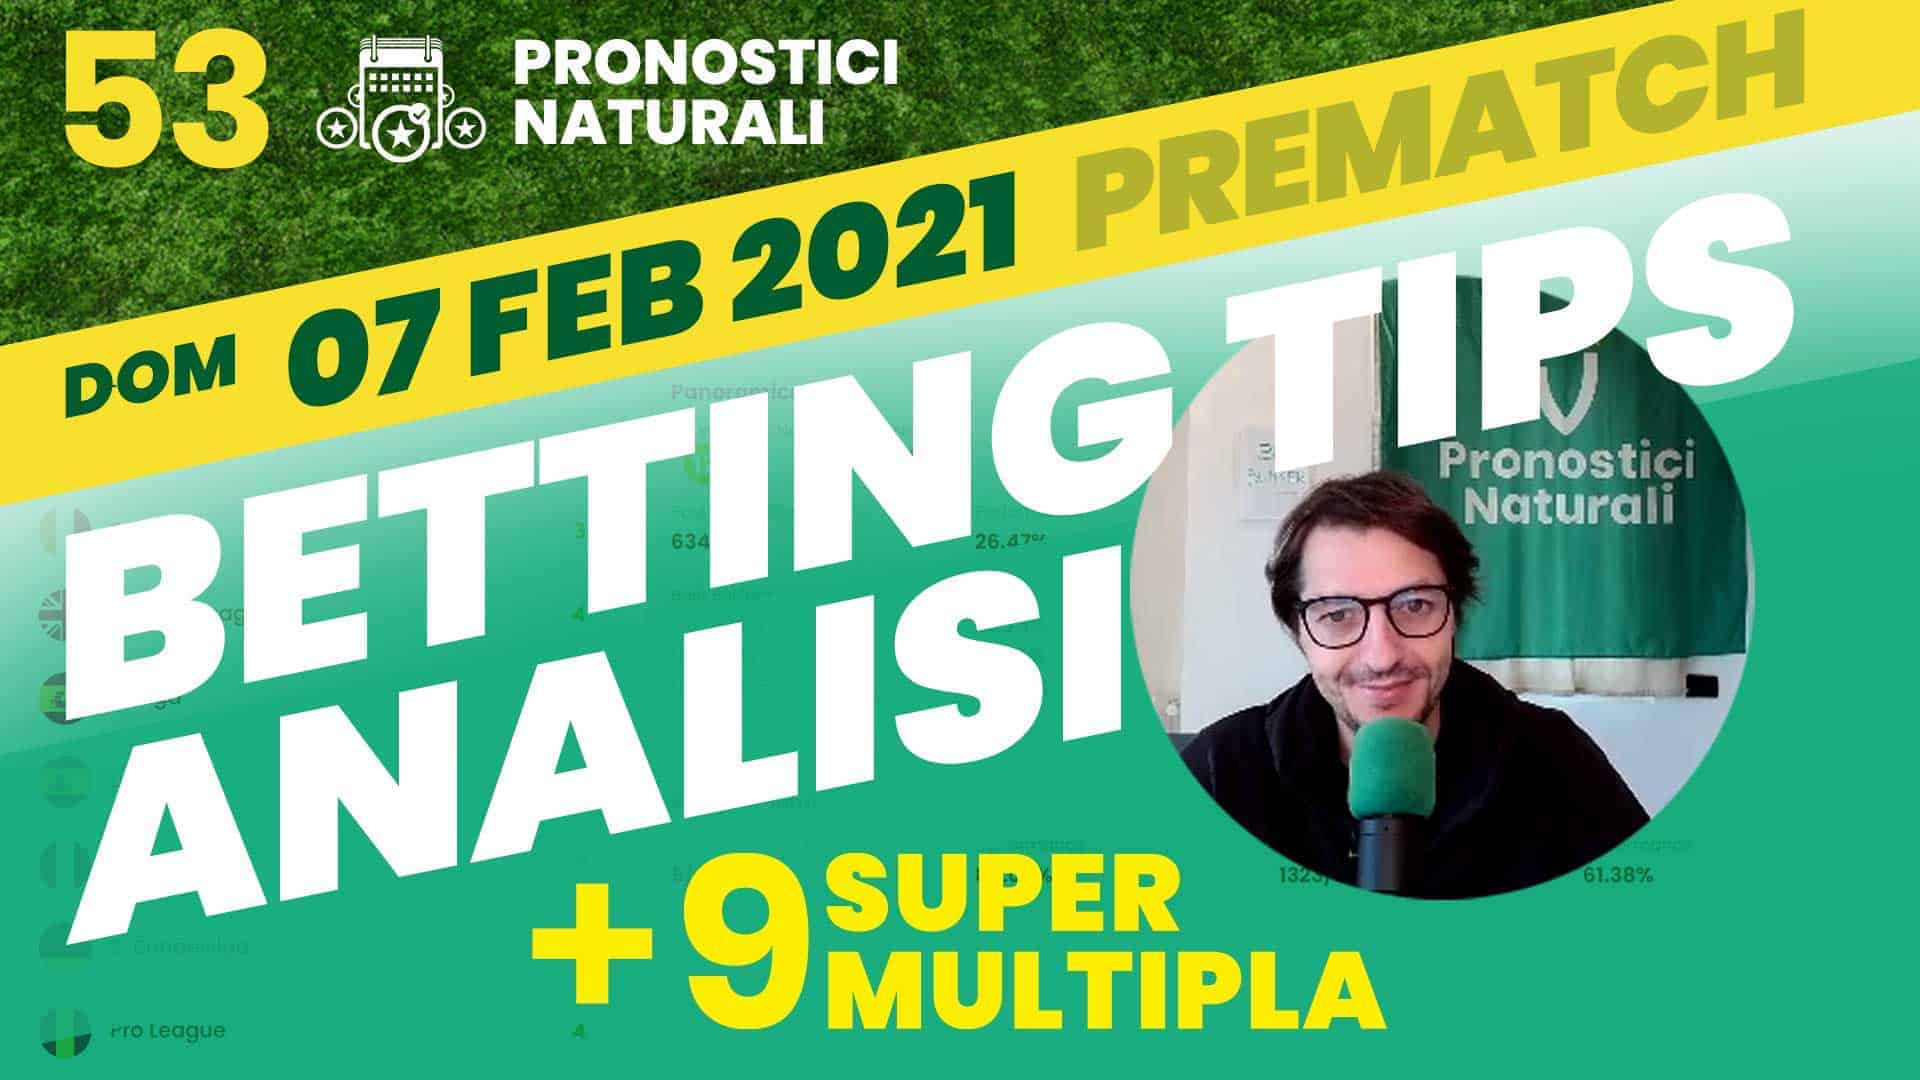 Pronostici Naturali Video Analisi Scommesse Betting Calcio Pre Partite SuperMultipla9 Domenica 7 Febbraio 2021